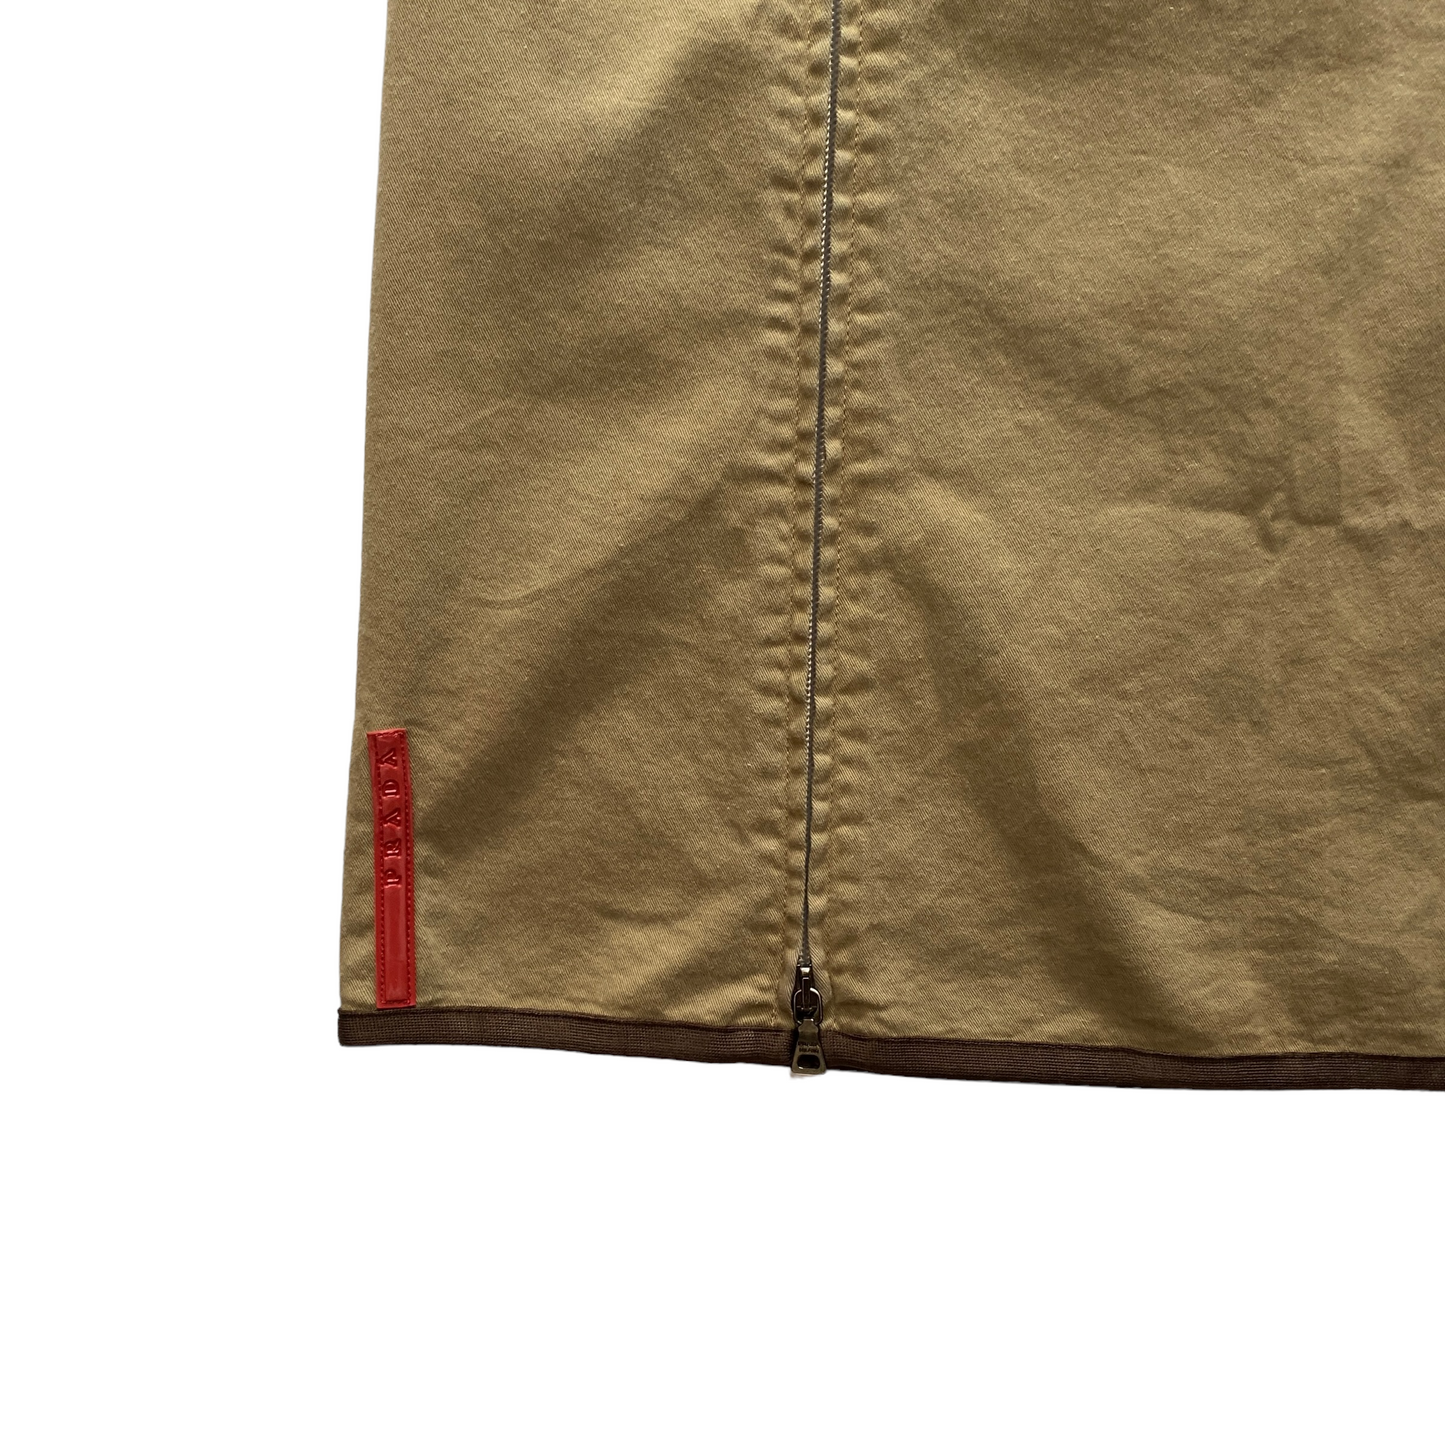 00’s Prada Sport Double Zip Cotton Knee Skirt (39W)